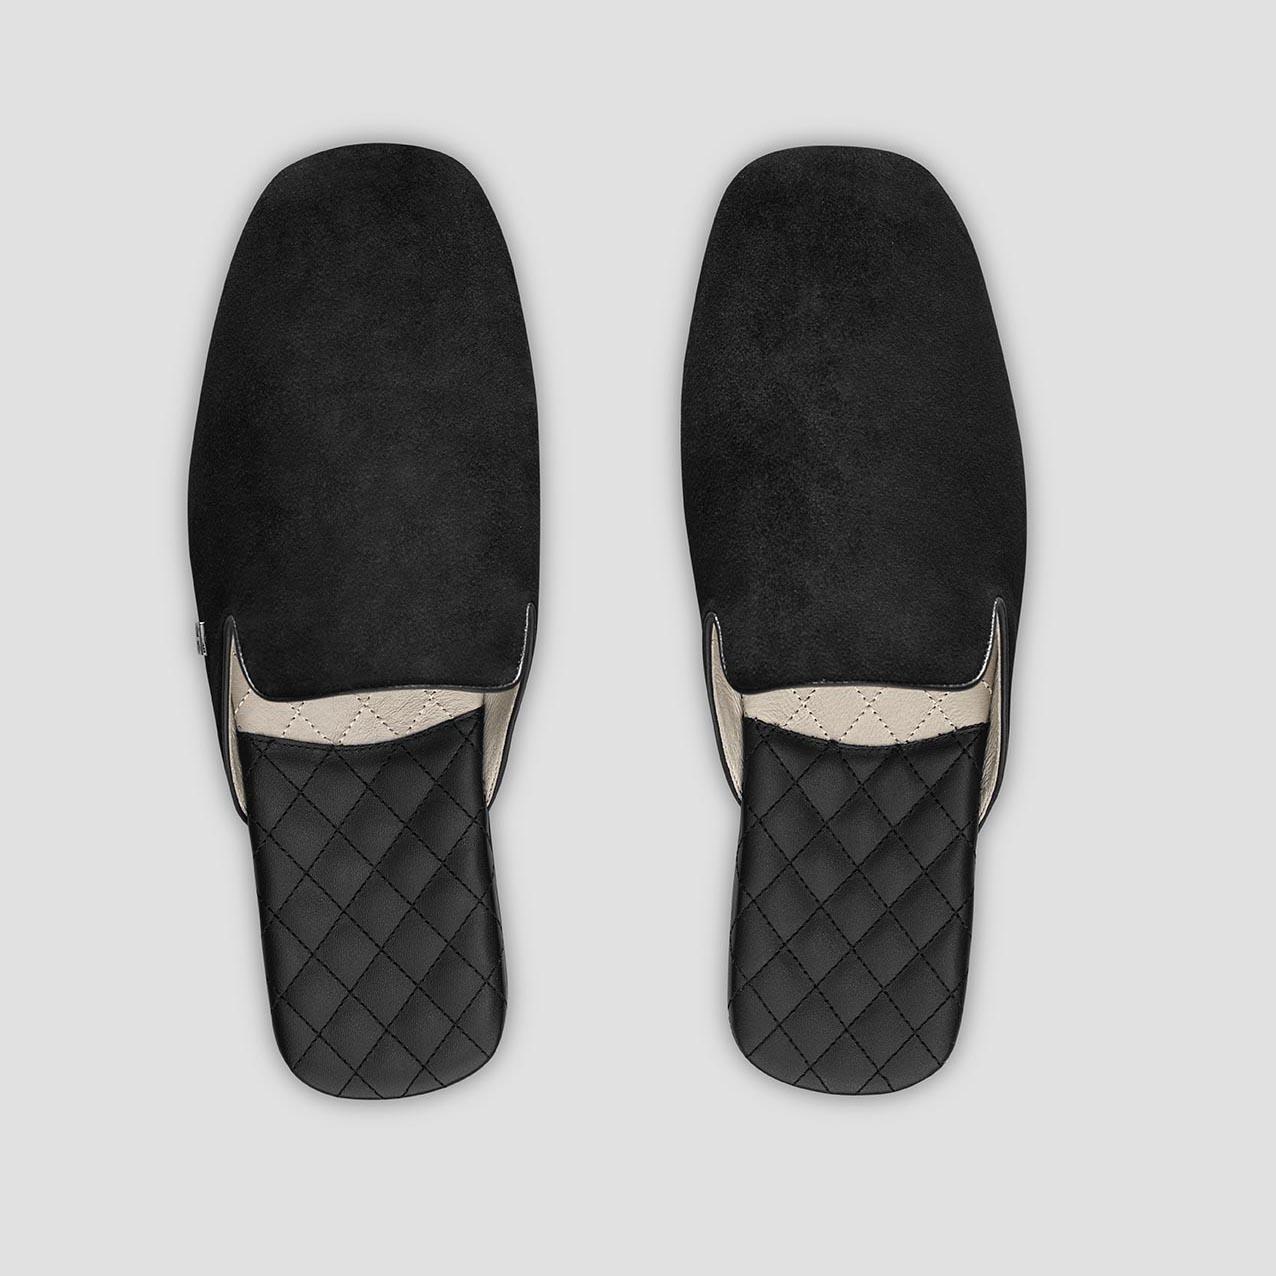 Тапочки Togas Реон черные мужские кожаные, размер 40-41 тапочки togas оливер мужские черные р 46 47